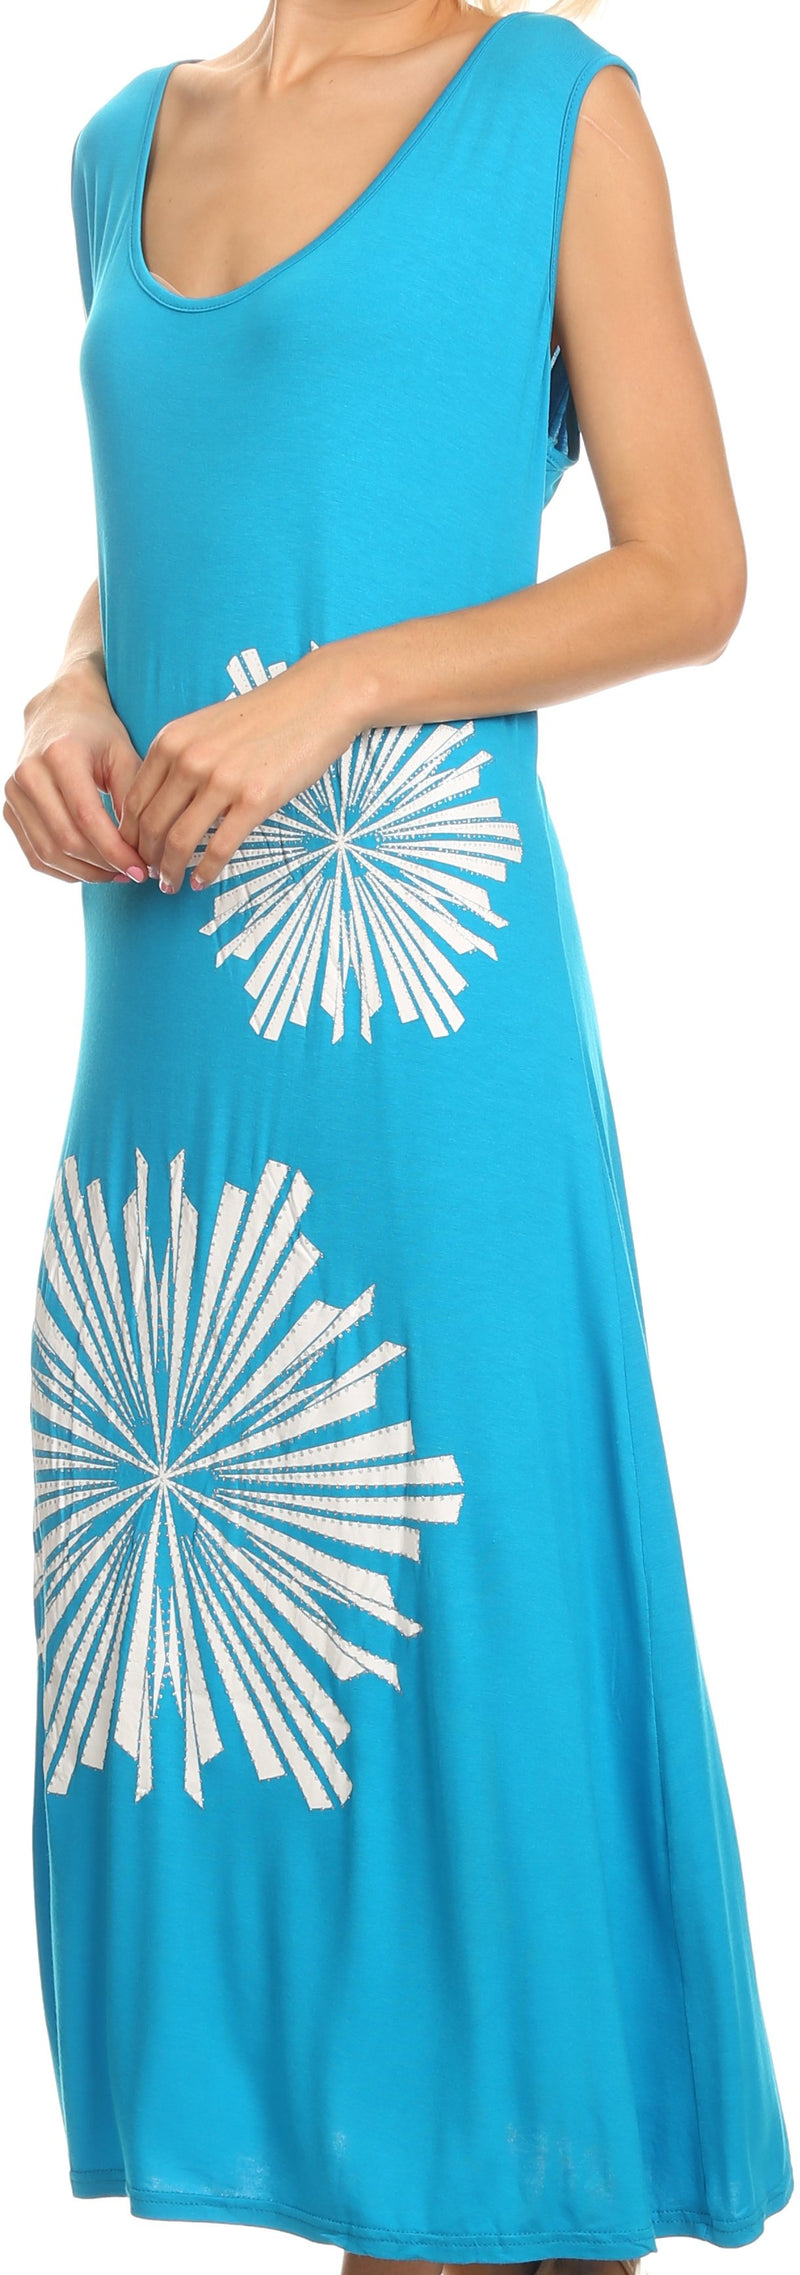 Sakkas Cilva Long Maxi Tapered Floral Paisley Printed Metal Design Lace Tank Dress